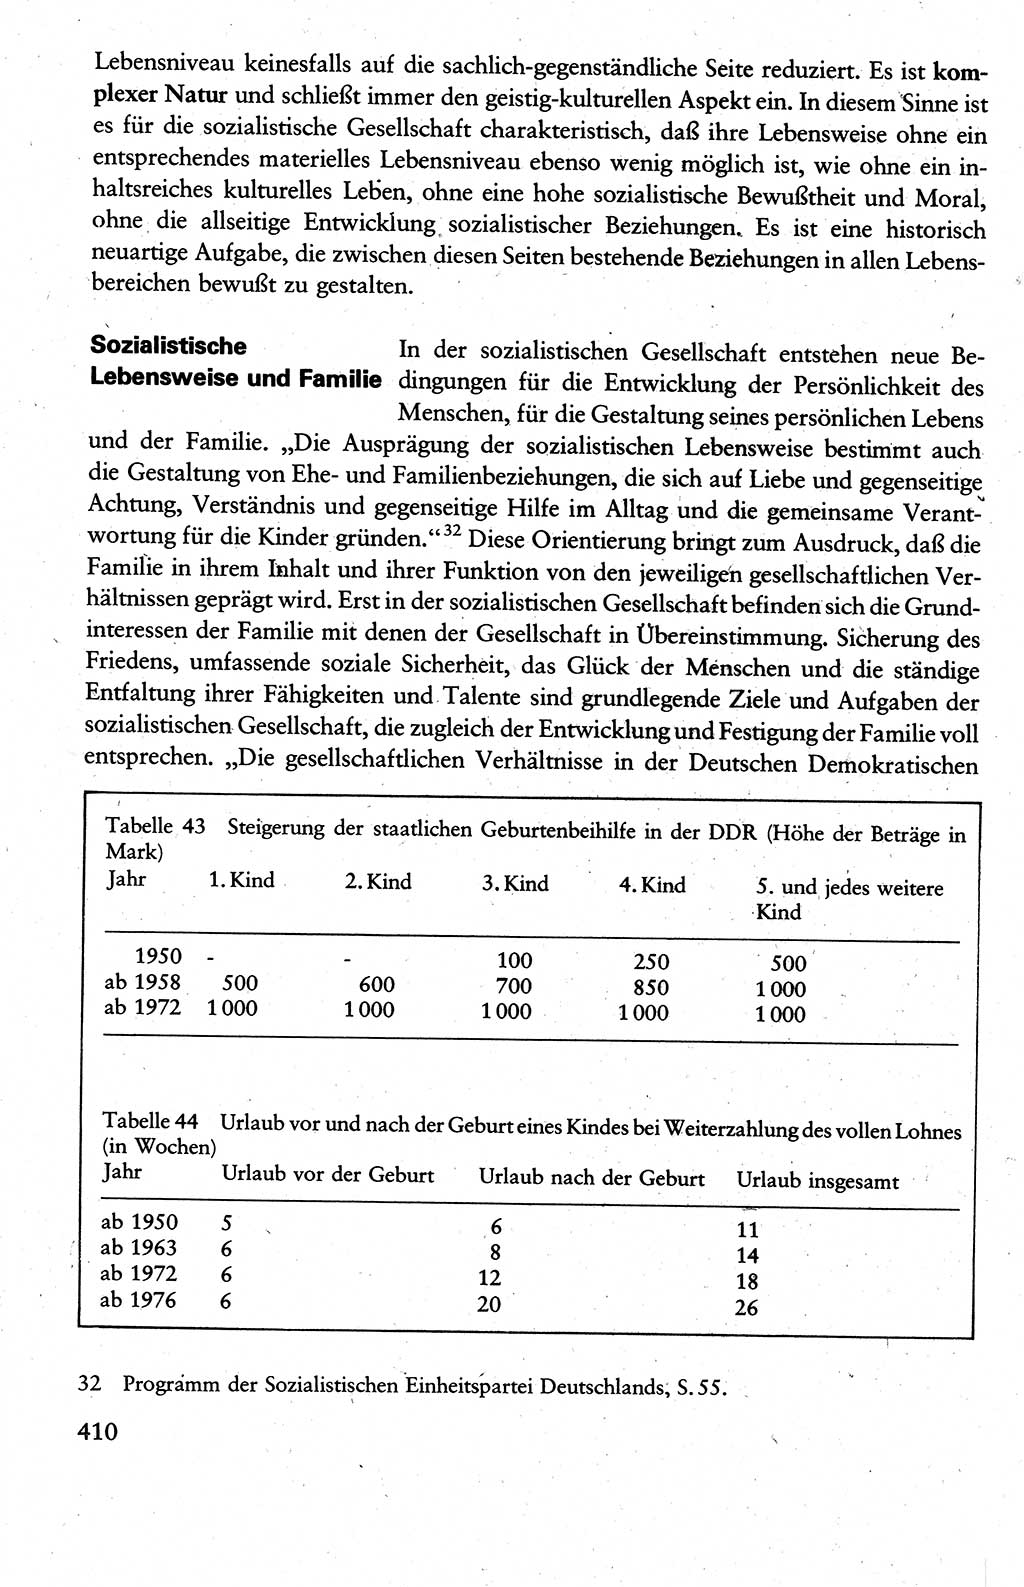 Wissenschaftlicher Kommunismus [Deutsche Demokratische Republik (DDR)], Lehrbuch für das marxistisch-leninistische Grundlagenstudium 1983, Seite 410 (Wiss. Komm. DDR Lb. 1983, S. 410)